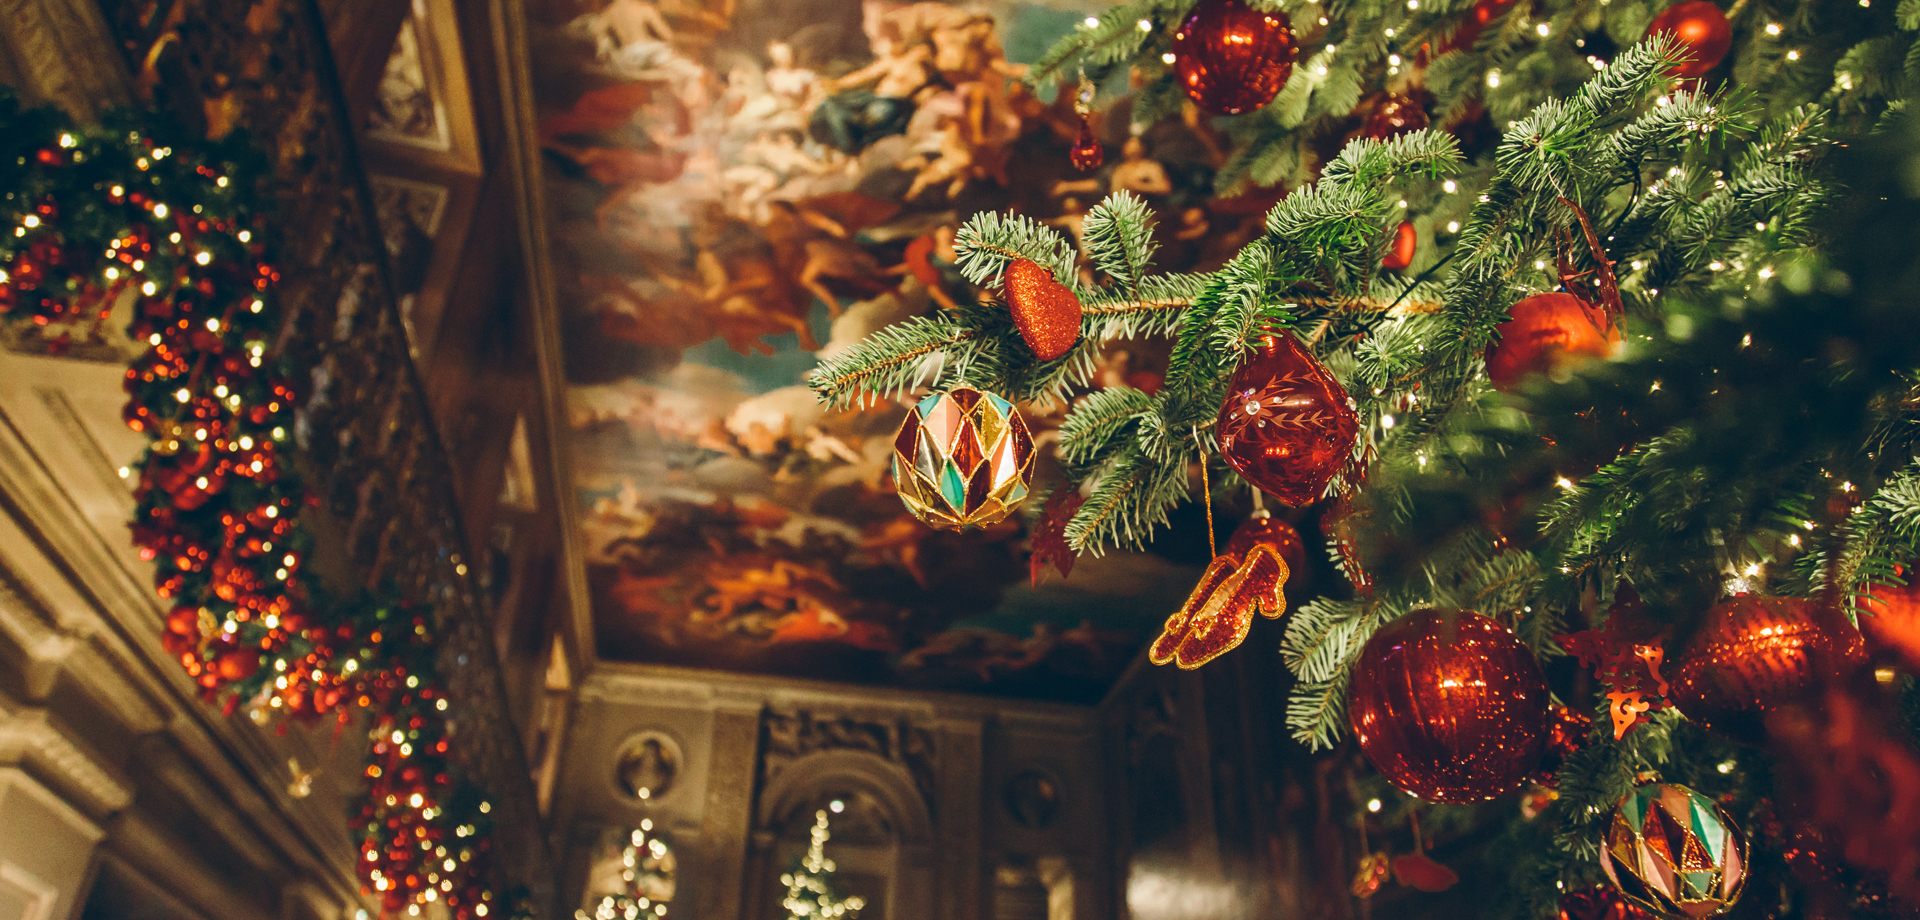 Christmas at Chatsworth